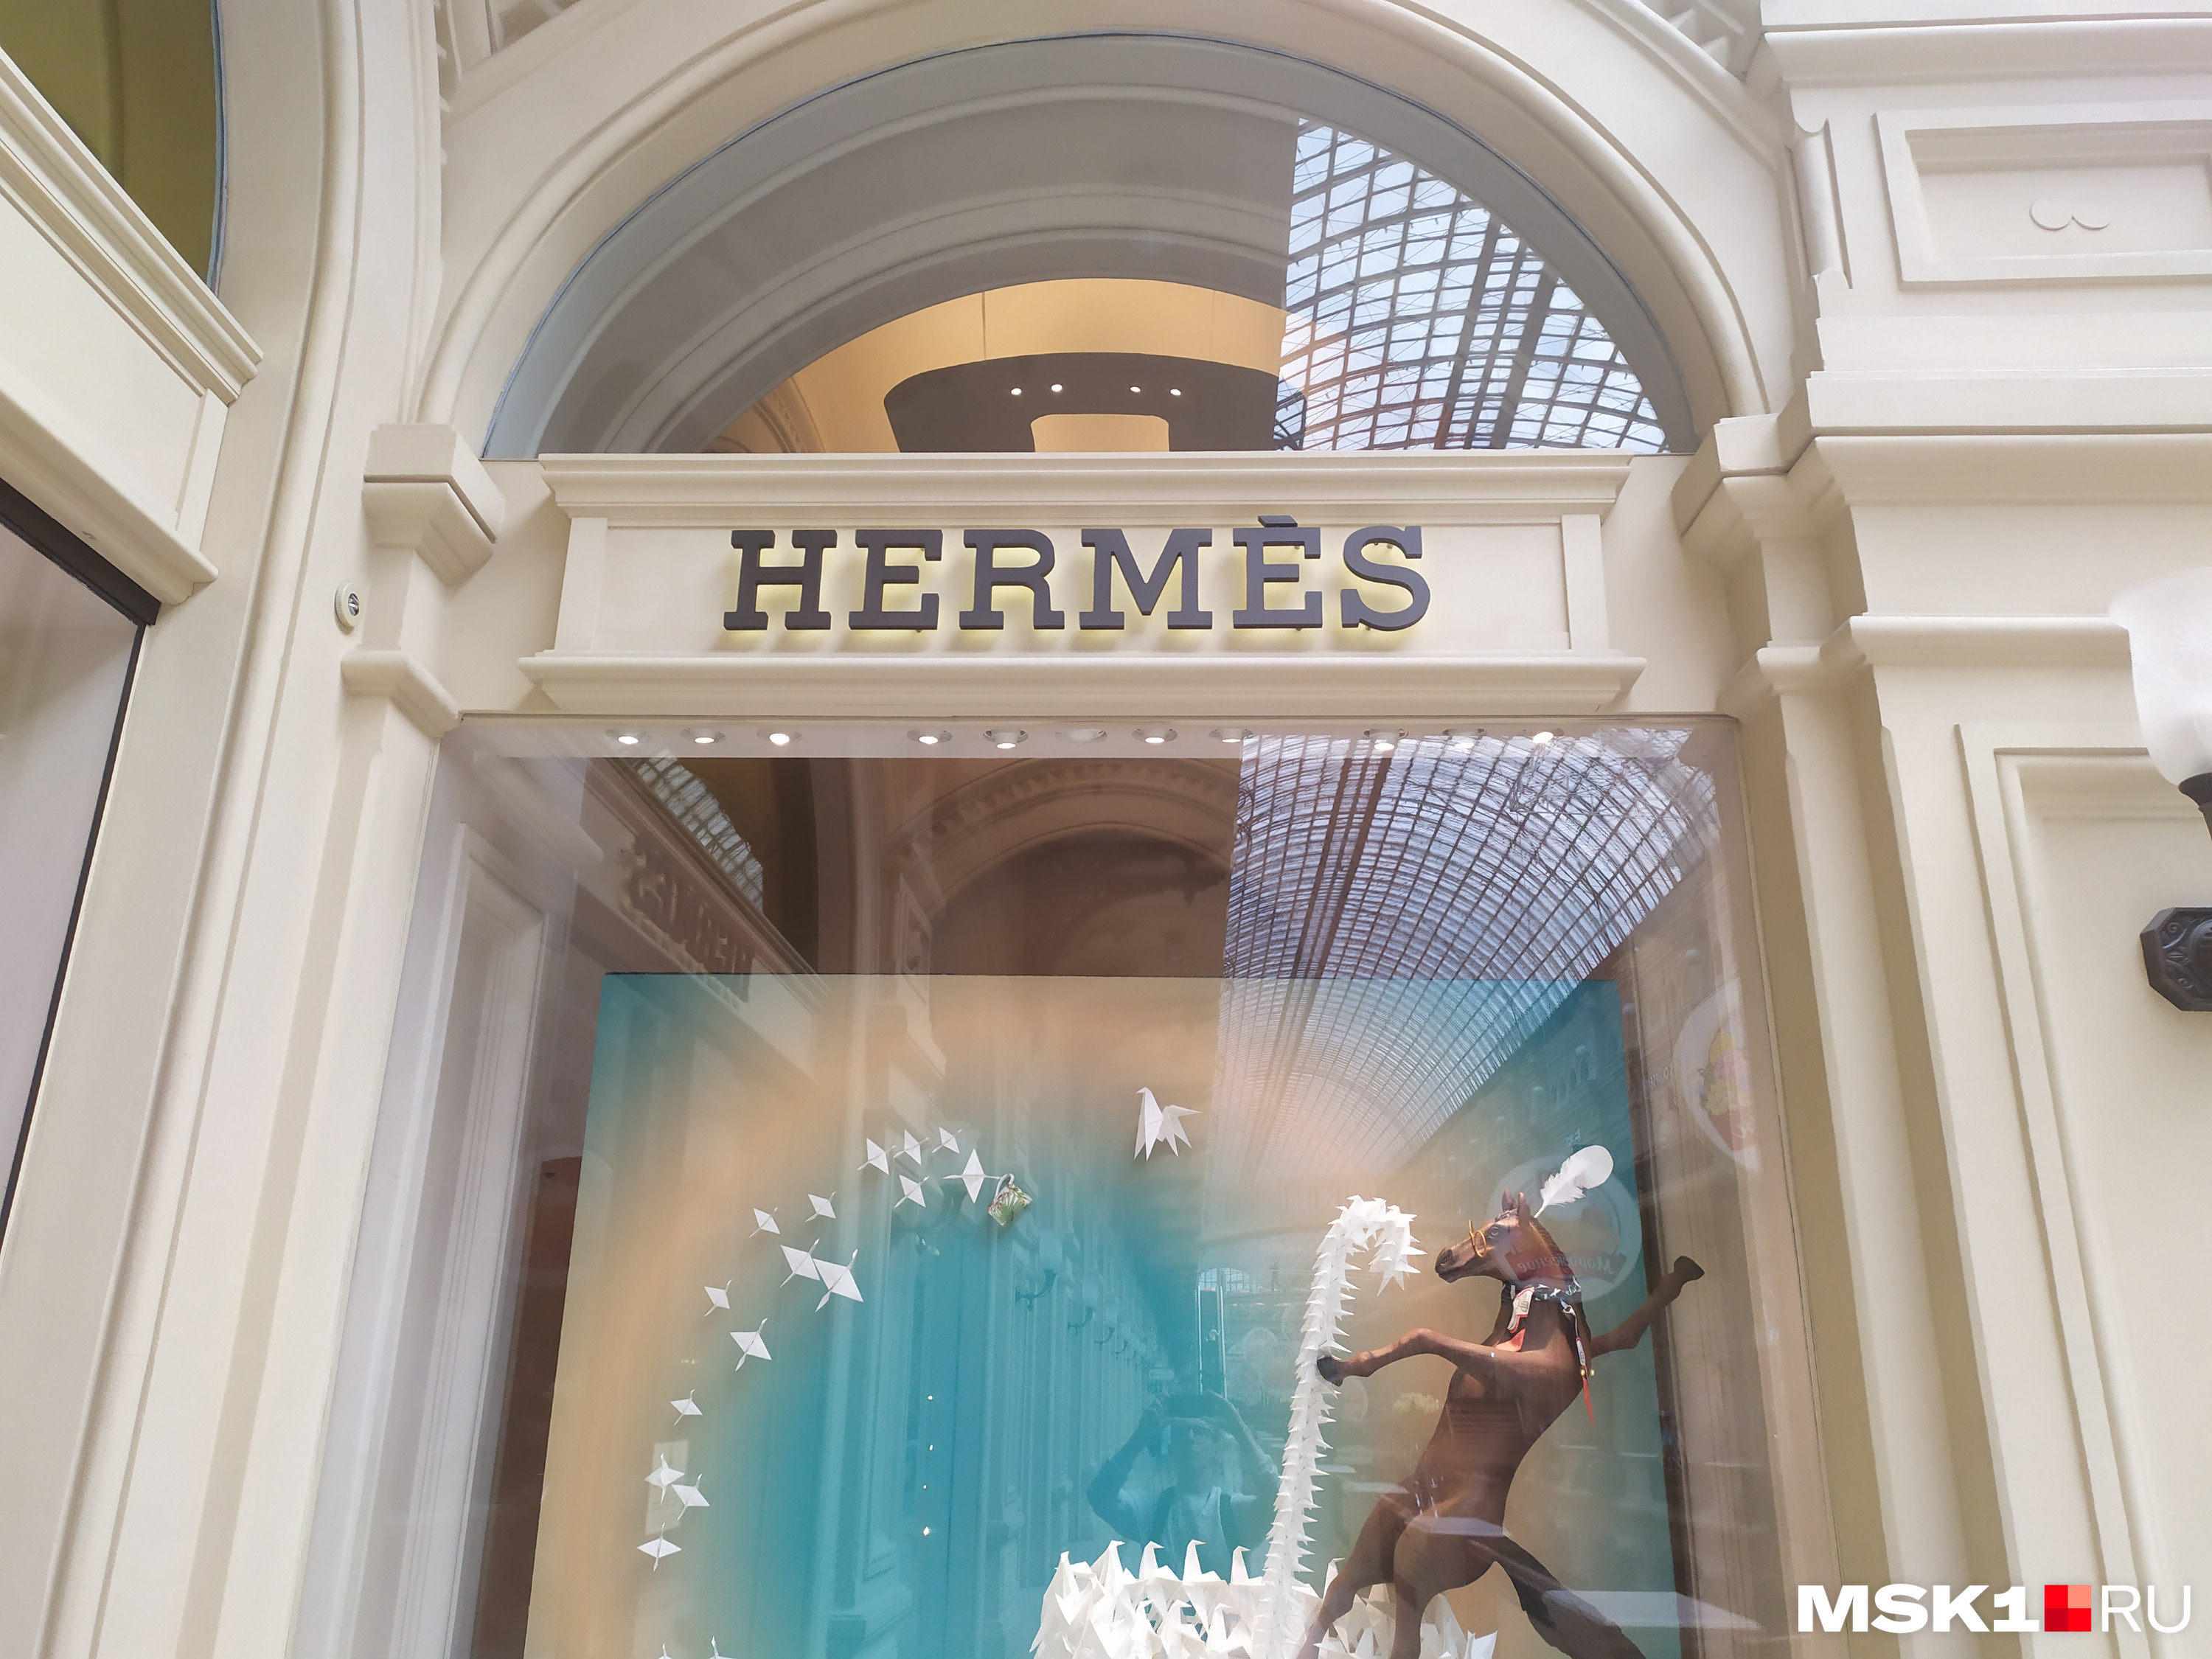 Оформление Hermes не уступает другим салонам в ГУМе